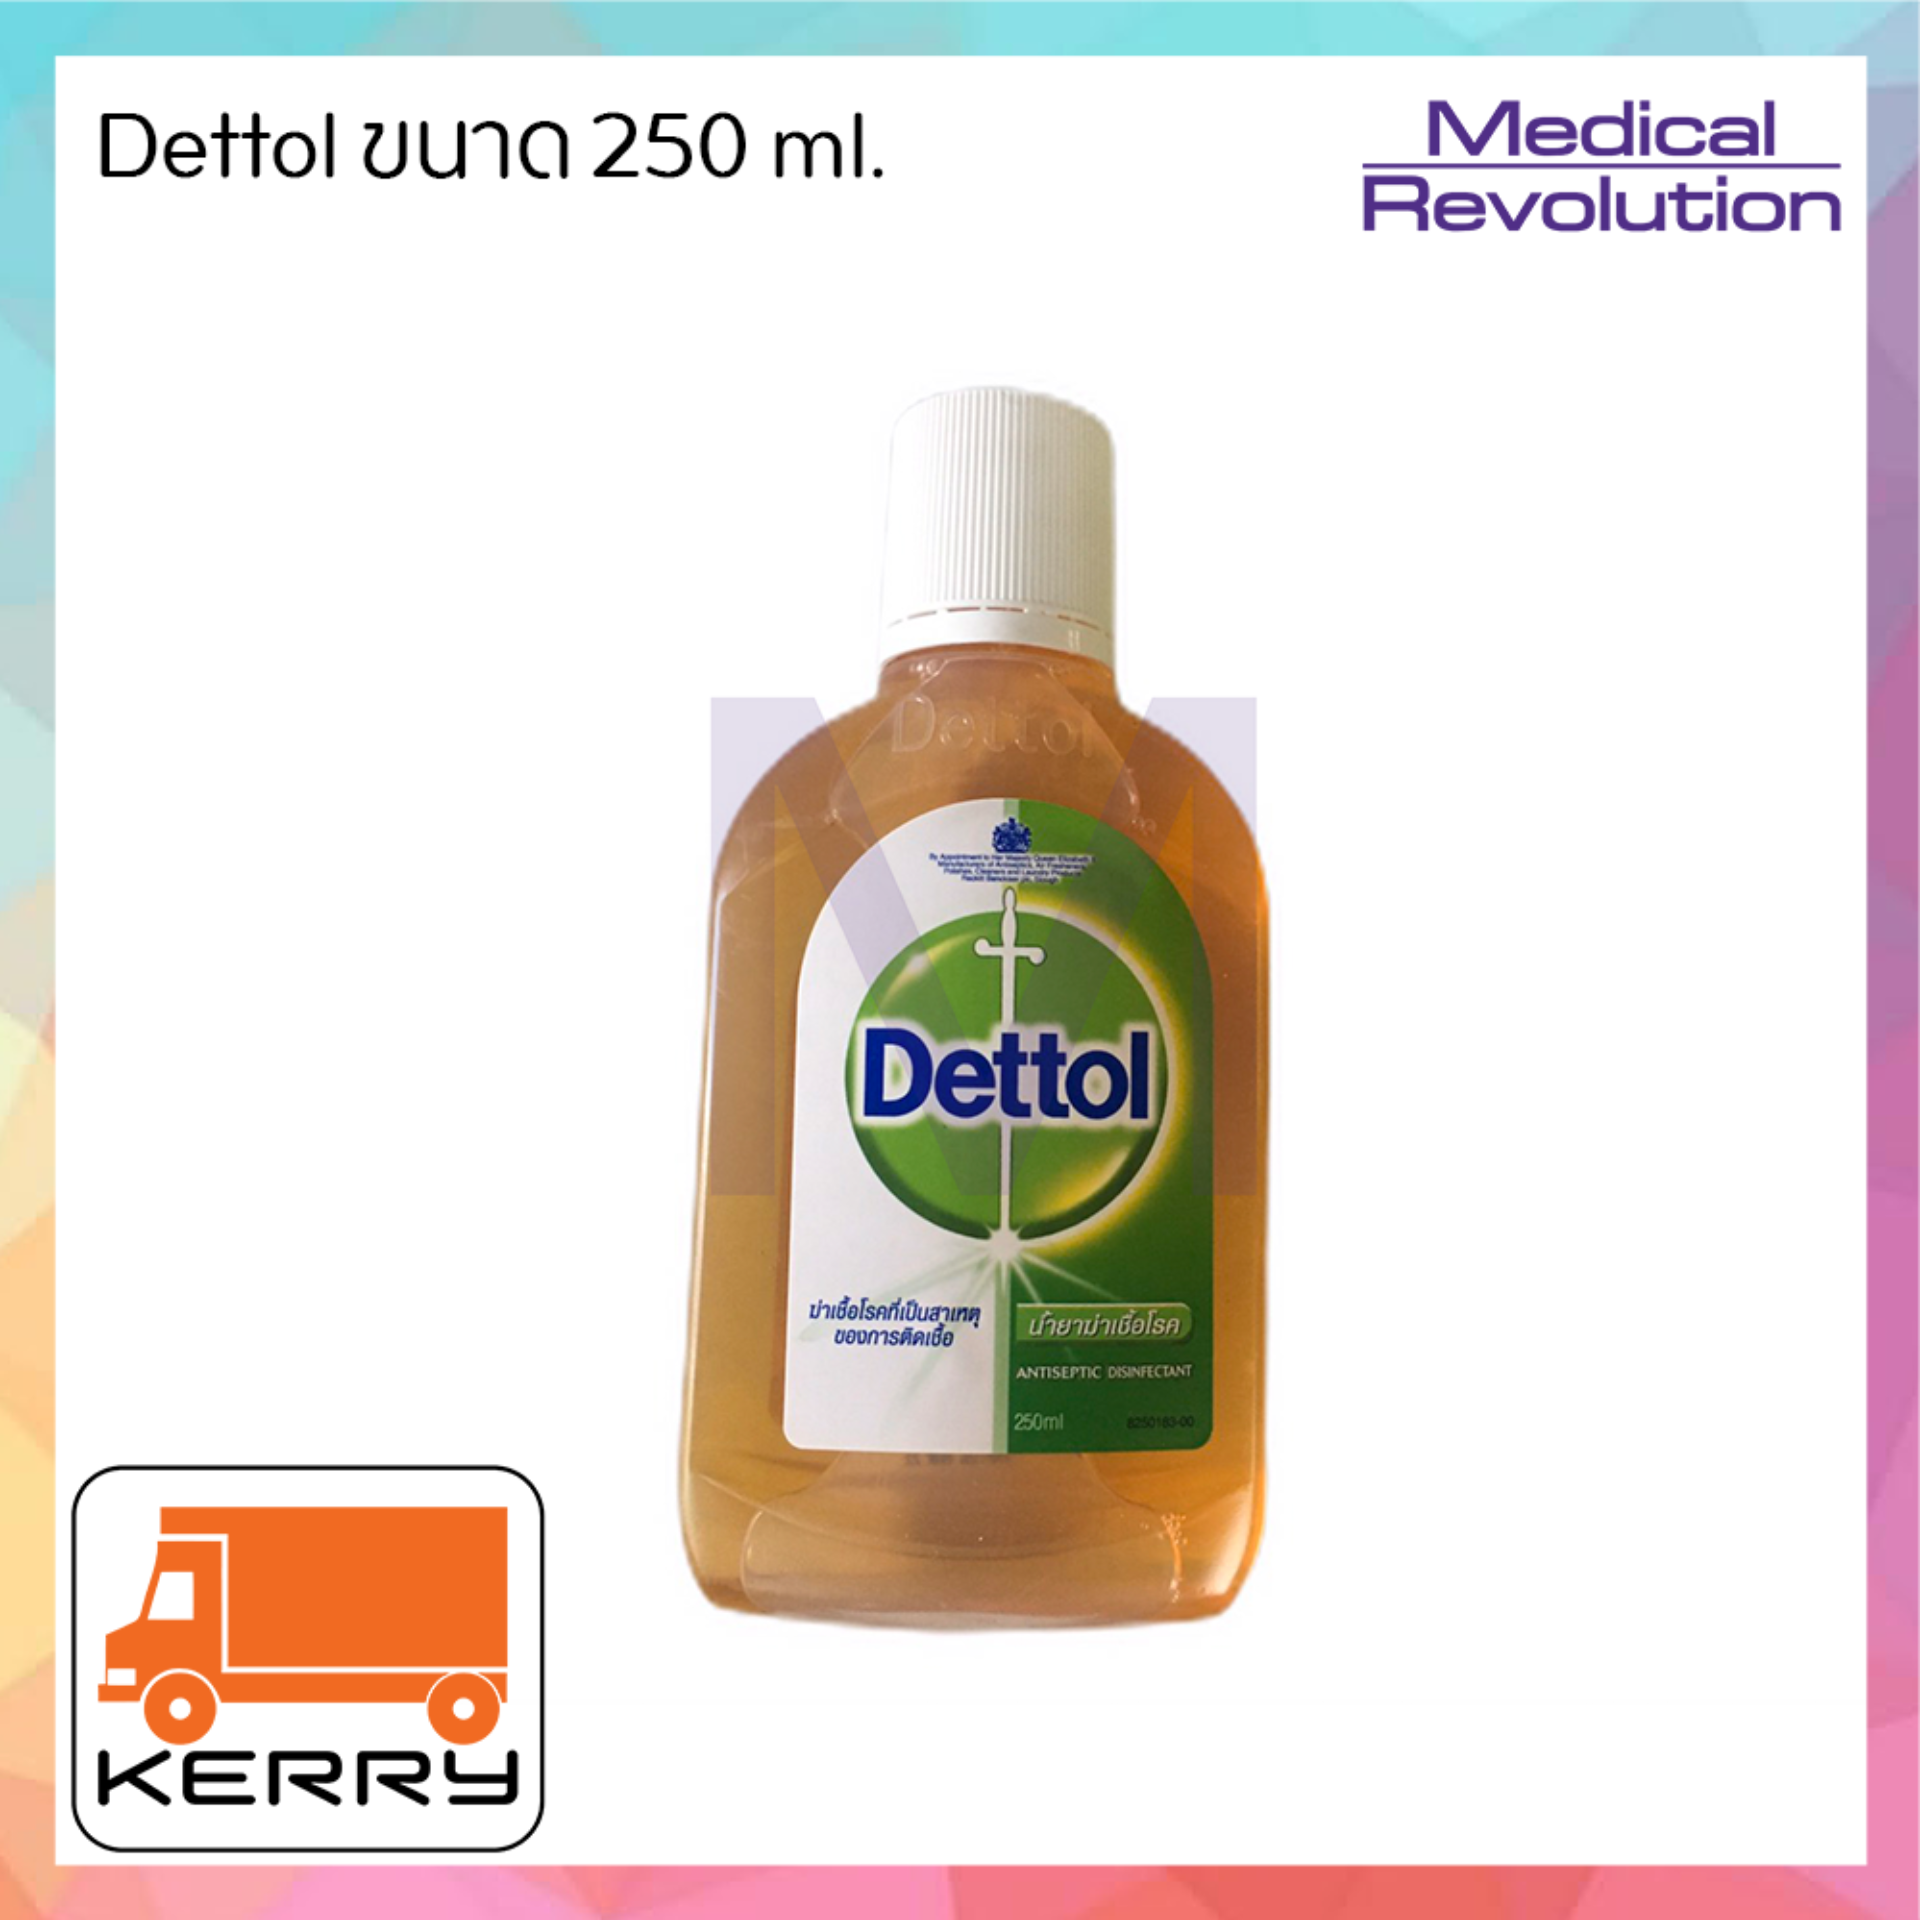 Dettol น้ำยาฆ่าเชื้อโรค เดทตอน 250 ml. จำนวน 1 ขวด